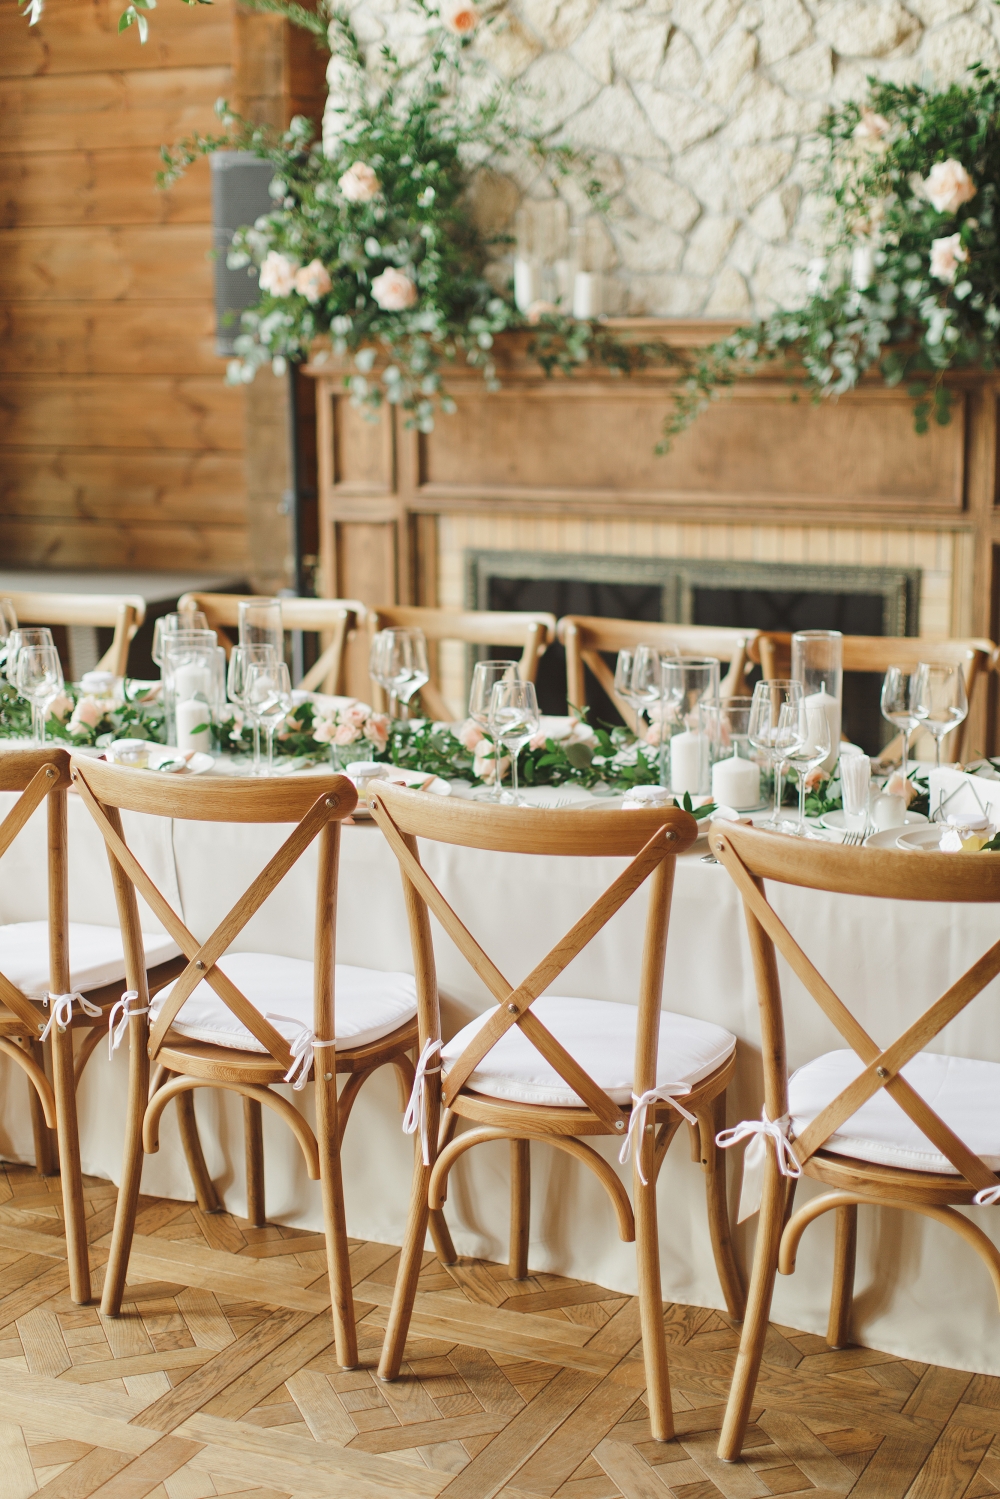 Утонченная сервировка гостевого стола, декорированного посередине гирляндой из зелени, цветов и свечей. Камин украшен свечами и композициями, деревянные стулья cross back